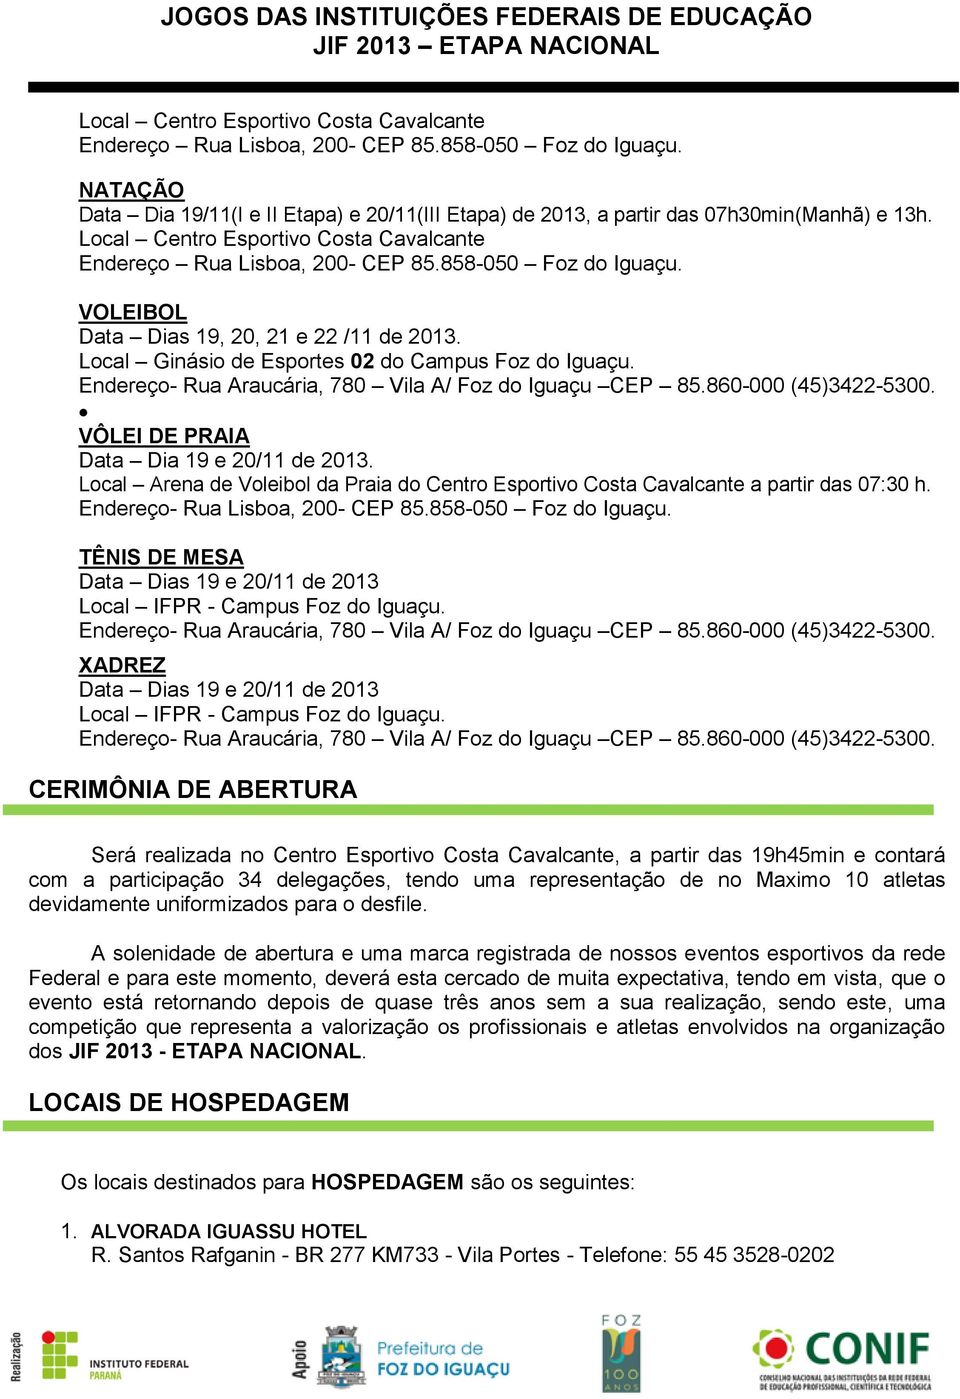 Endereço- Rua Araucária, 780 Vila A/ Foz do Iguaçu CEP 85.860-000 (45)3422-5300. VÔLEI DE PRAIA Data Dia 19 e 20/11 de 2013.